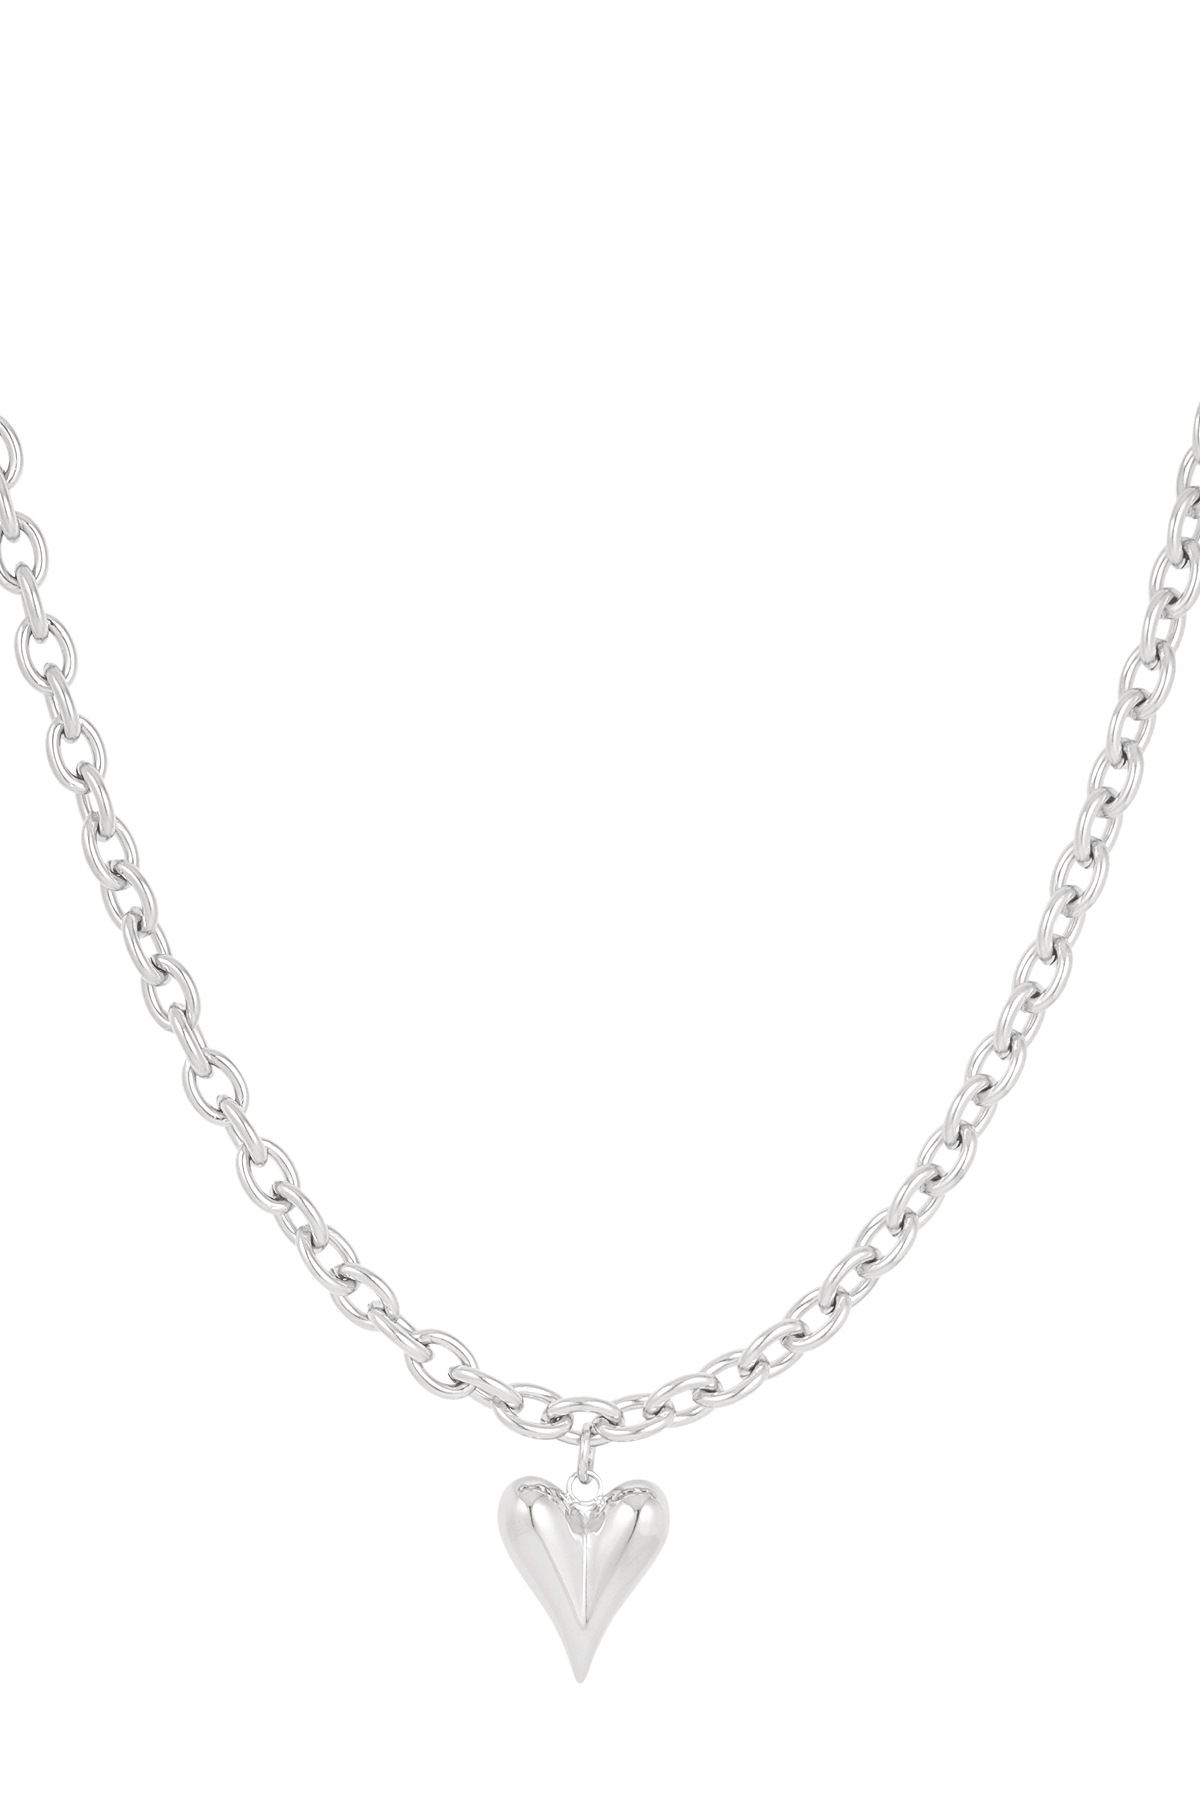 Halskette Liebesregeln - Silber